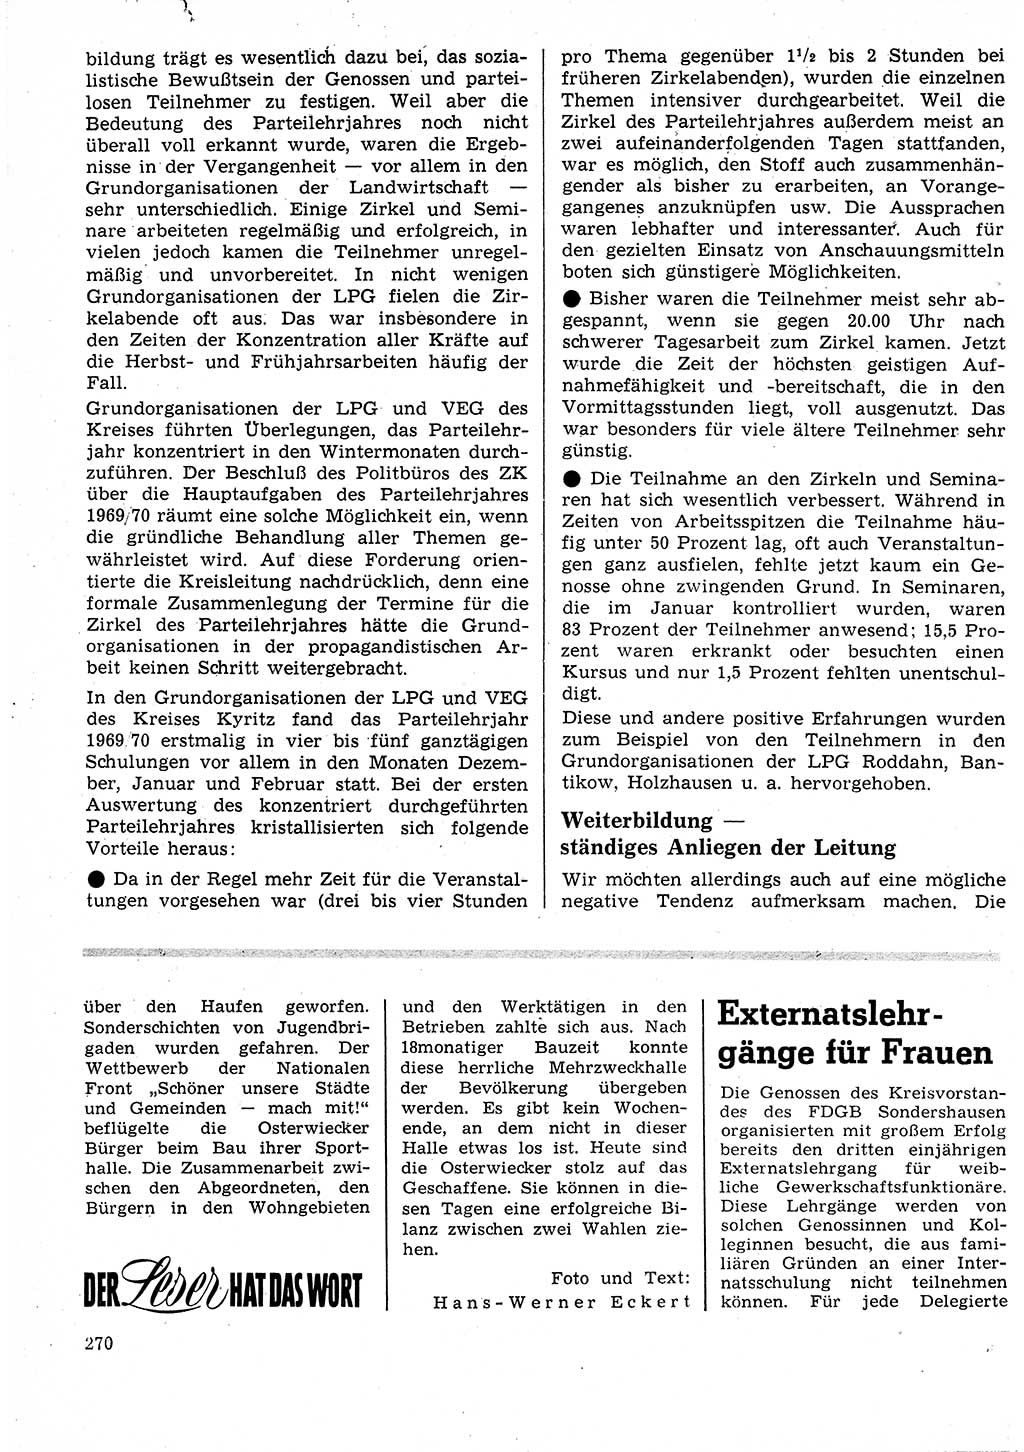 Neuer Weg (NW), Organ des Zentralkomitees (ZK) der SED (Sozialistische Einheitspartei Deutschlands) für Fragen des Parteilebens, 25. Jahrgang [Deutsche Demokratische Republik (DDR)] 1970, Seite 270 (NW ZK SED DDR 1970, S. 270)